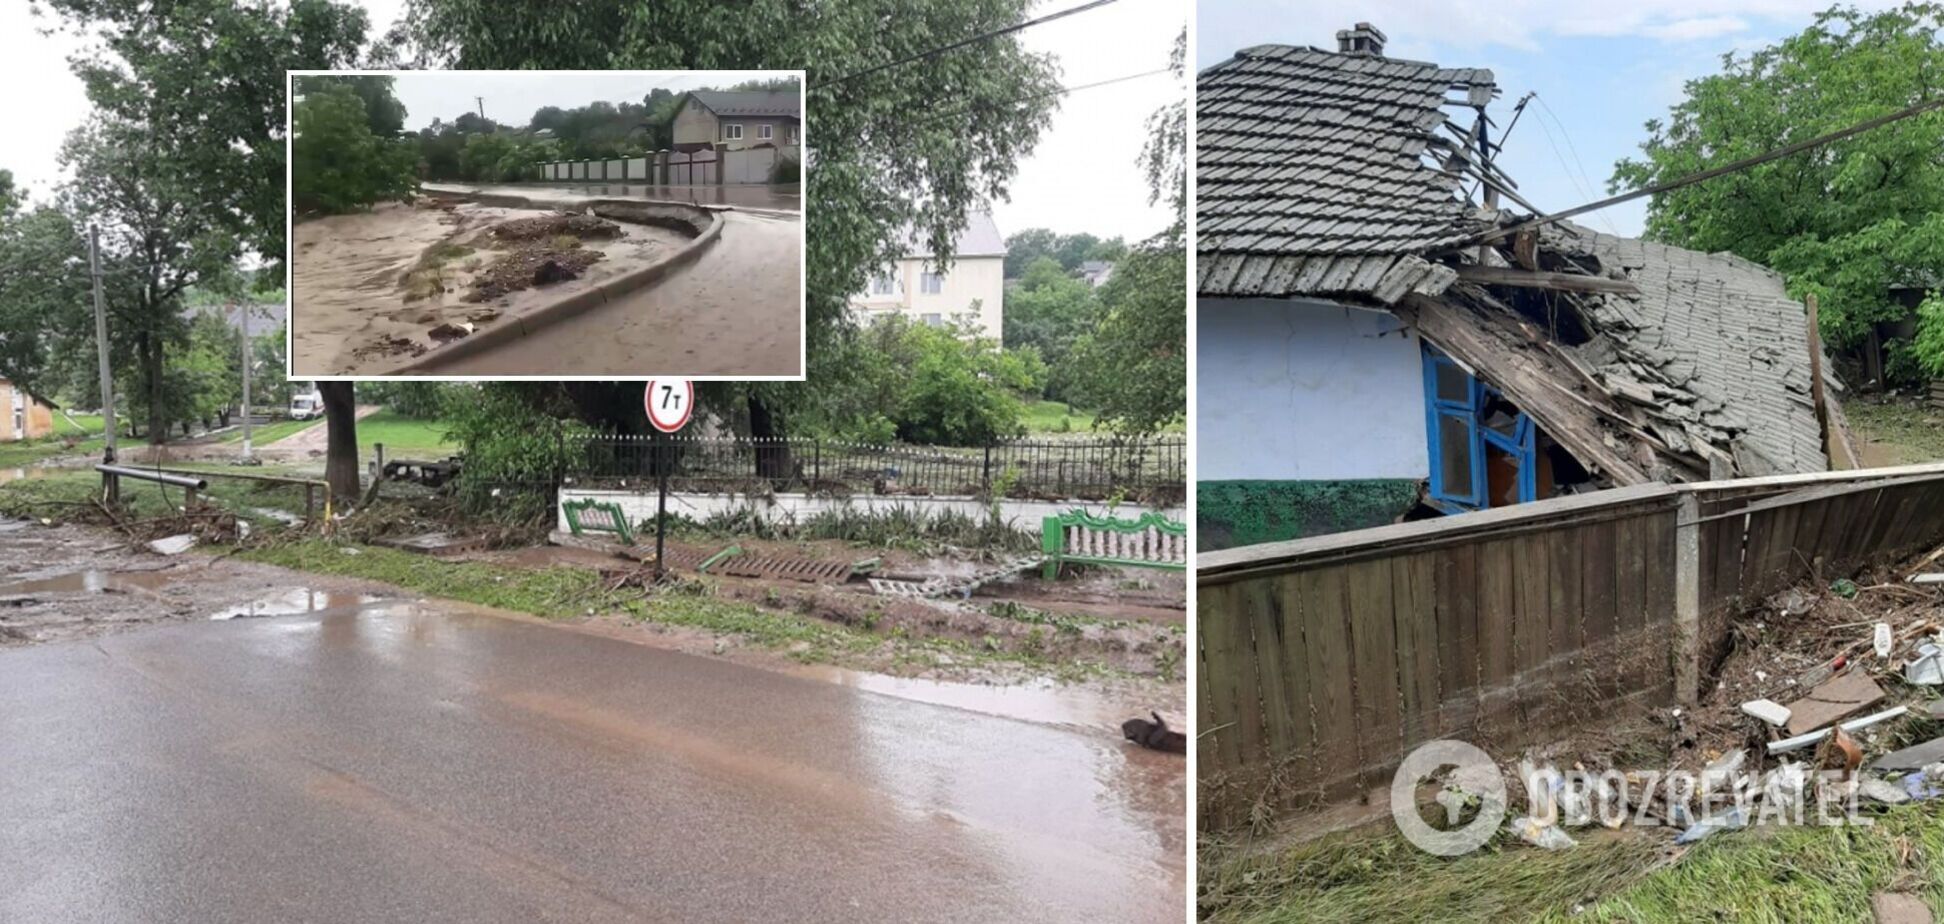 На Буковині затопило села, дороги перетворилися на річки: фото та відео негоди